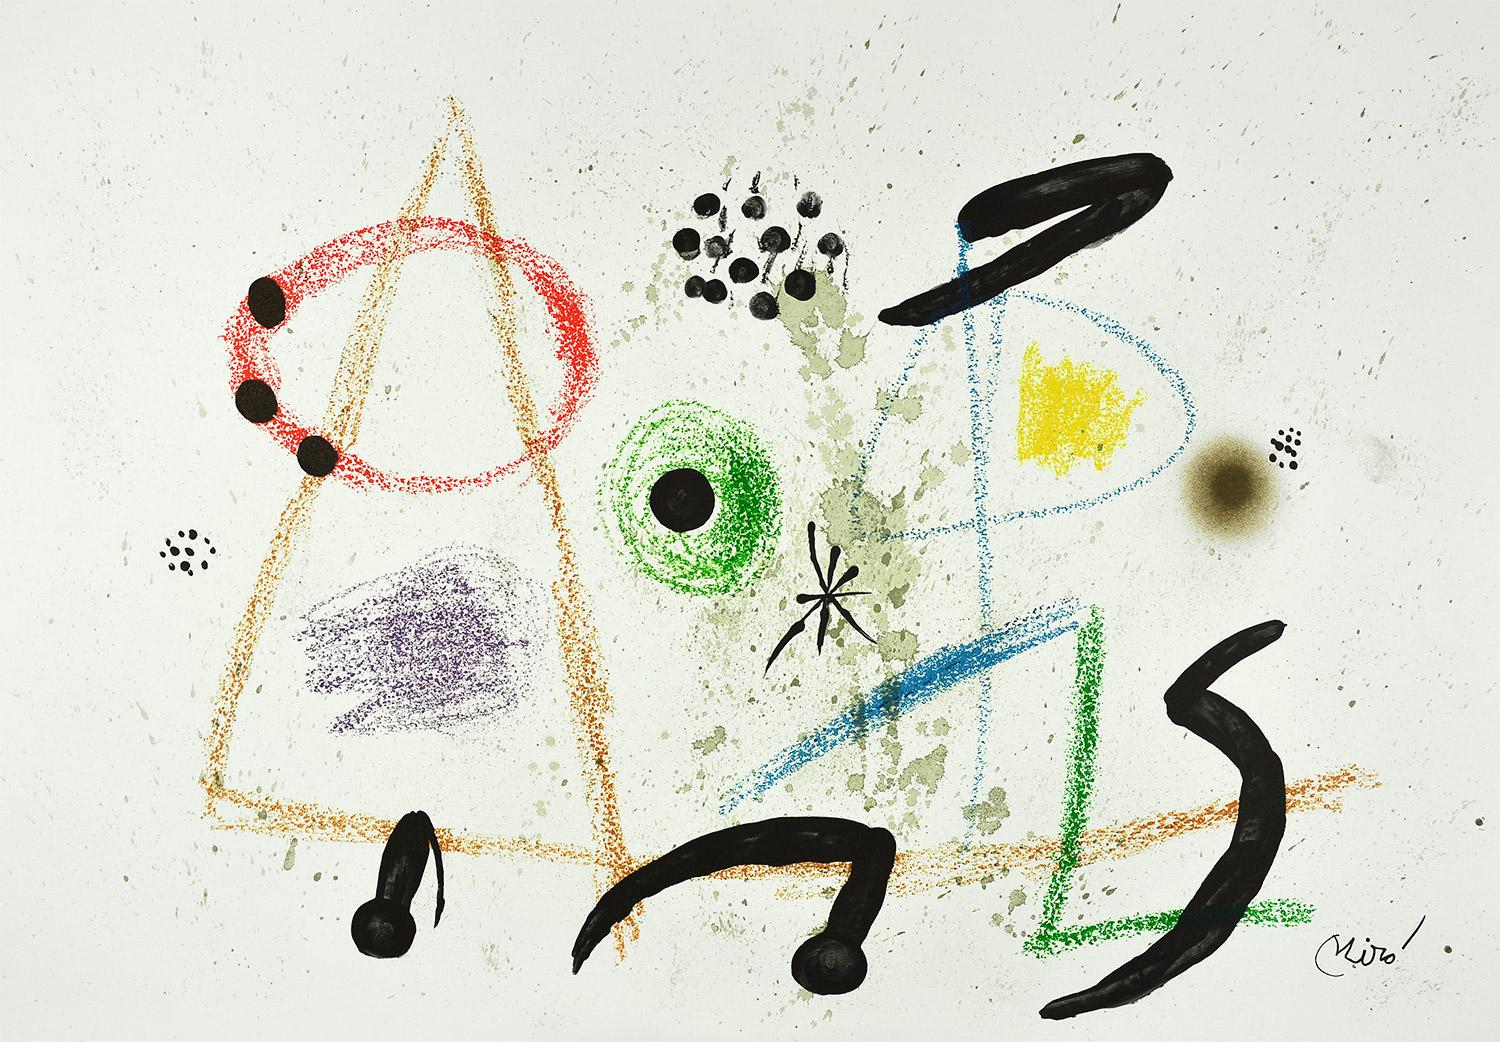 Joan Miró - Maravillas con variaciones acrósticas en el jardín de Miró III
Date of creation: 1975
Medium: Lithograph
Media: Gvarro paper
Edition: 1500
Size: 49,5 x 35,5 cm
Condition: In very good conditions and never framed
Observations: Lithograph